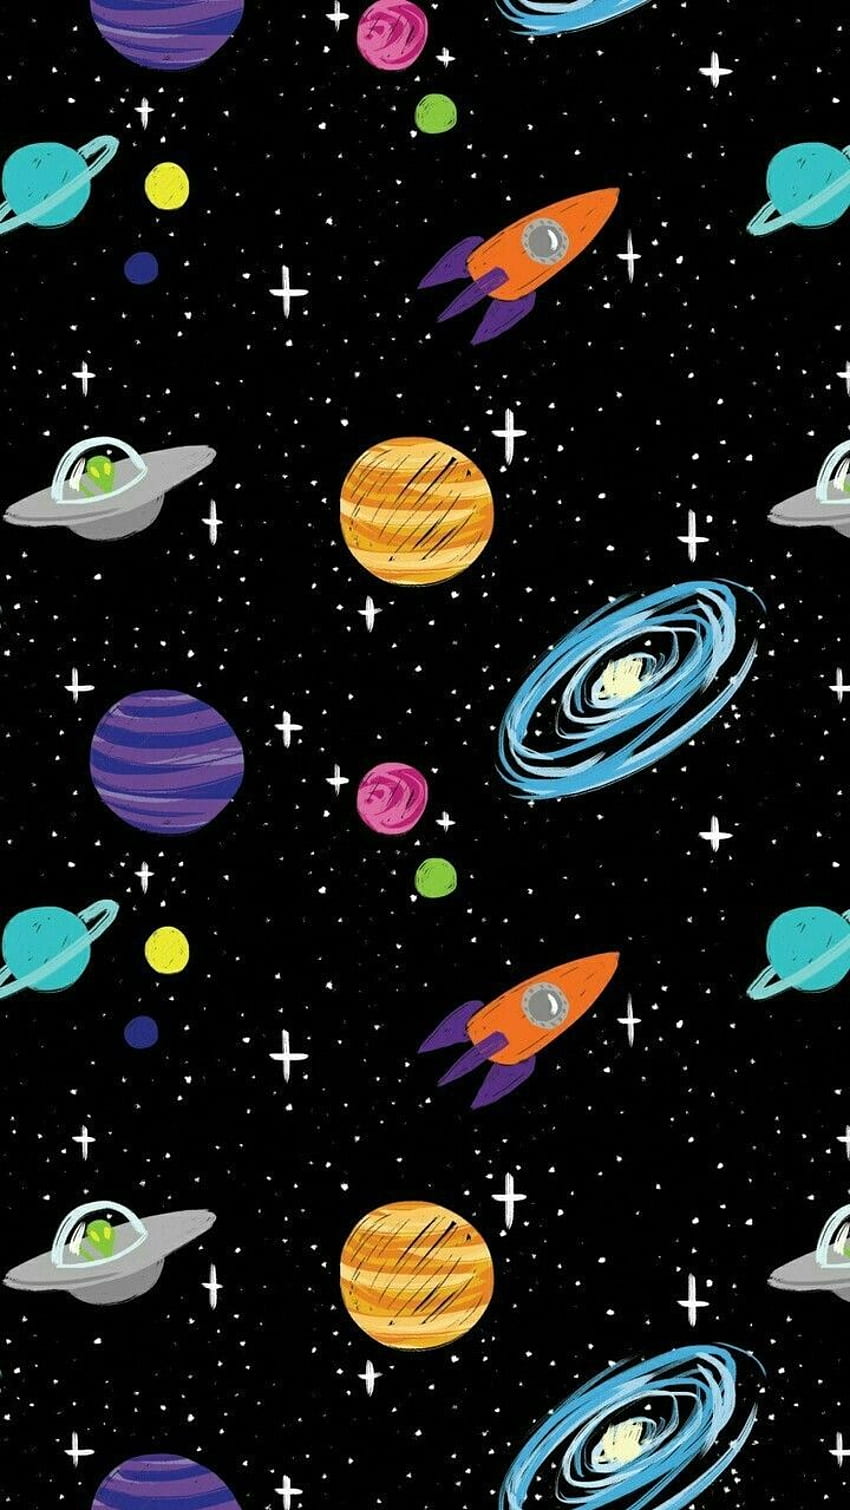 Espacio Dibujos animados Extranjeros Cohetes Naves Planetas Galaxia IPhone, Nave espacial de dibujos animados fondo de pantalla del teléfono